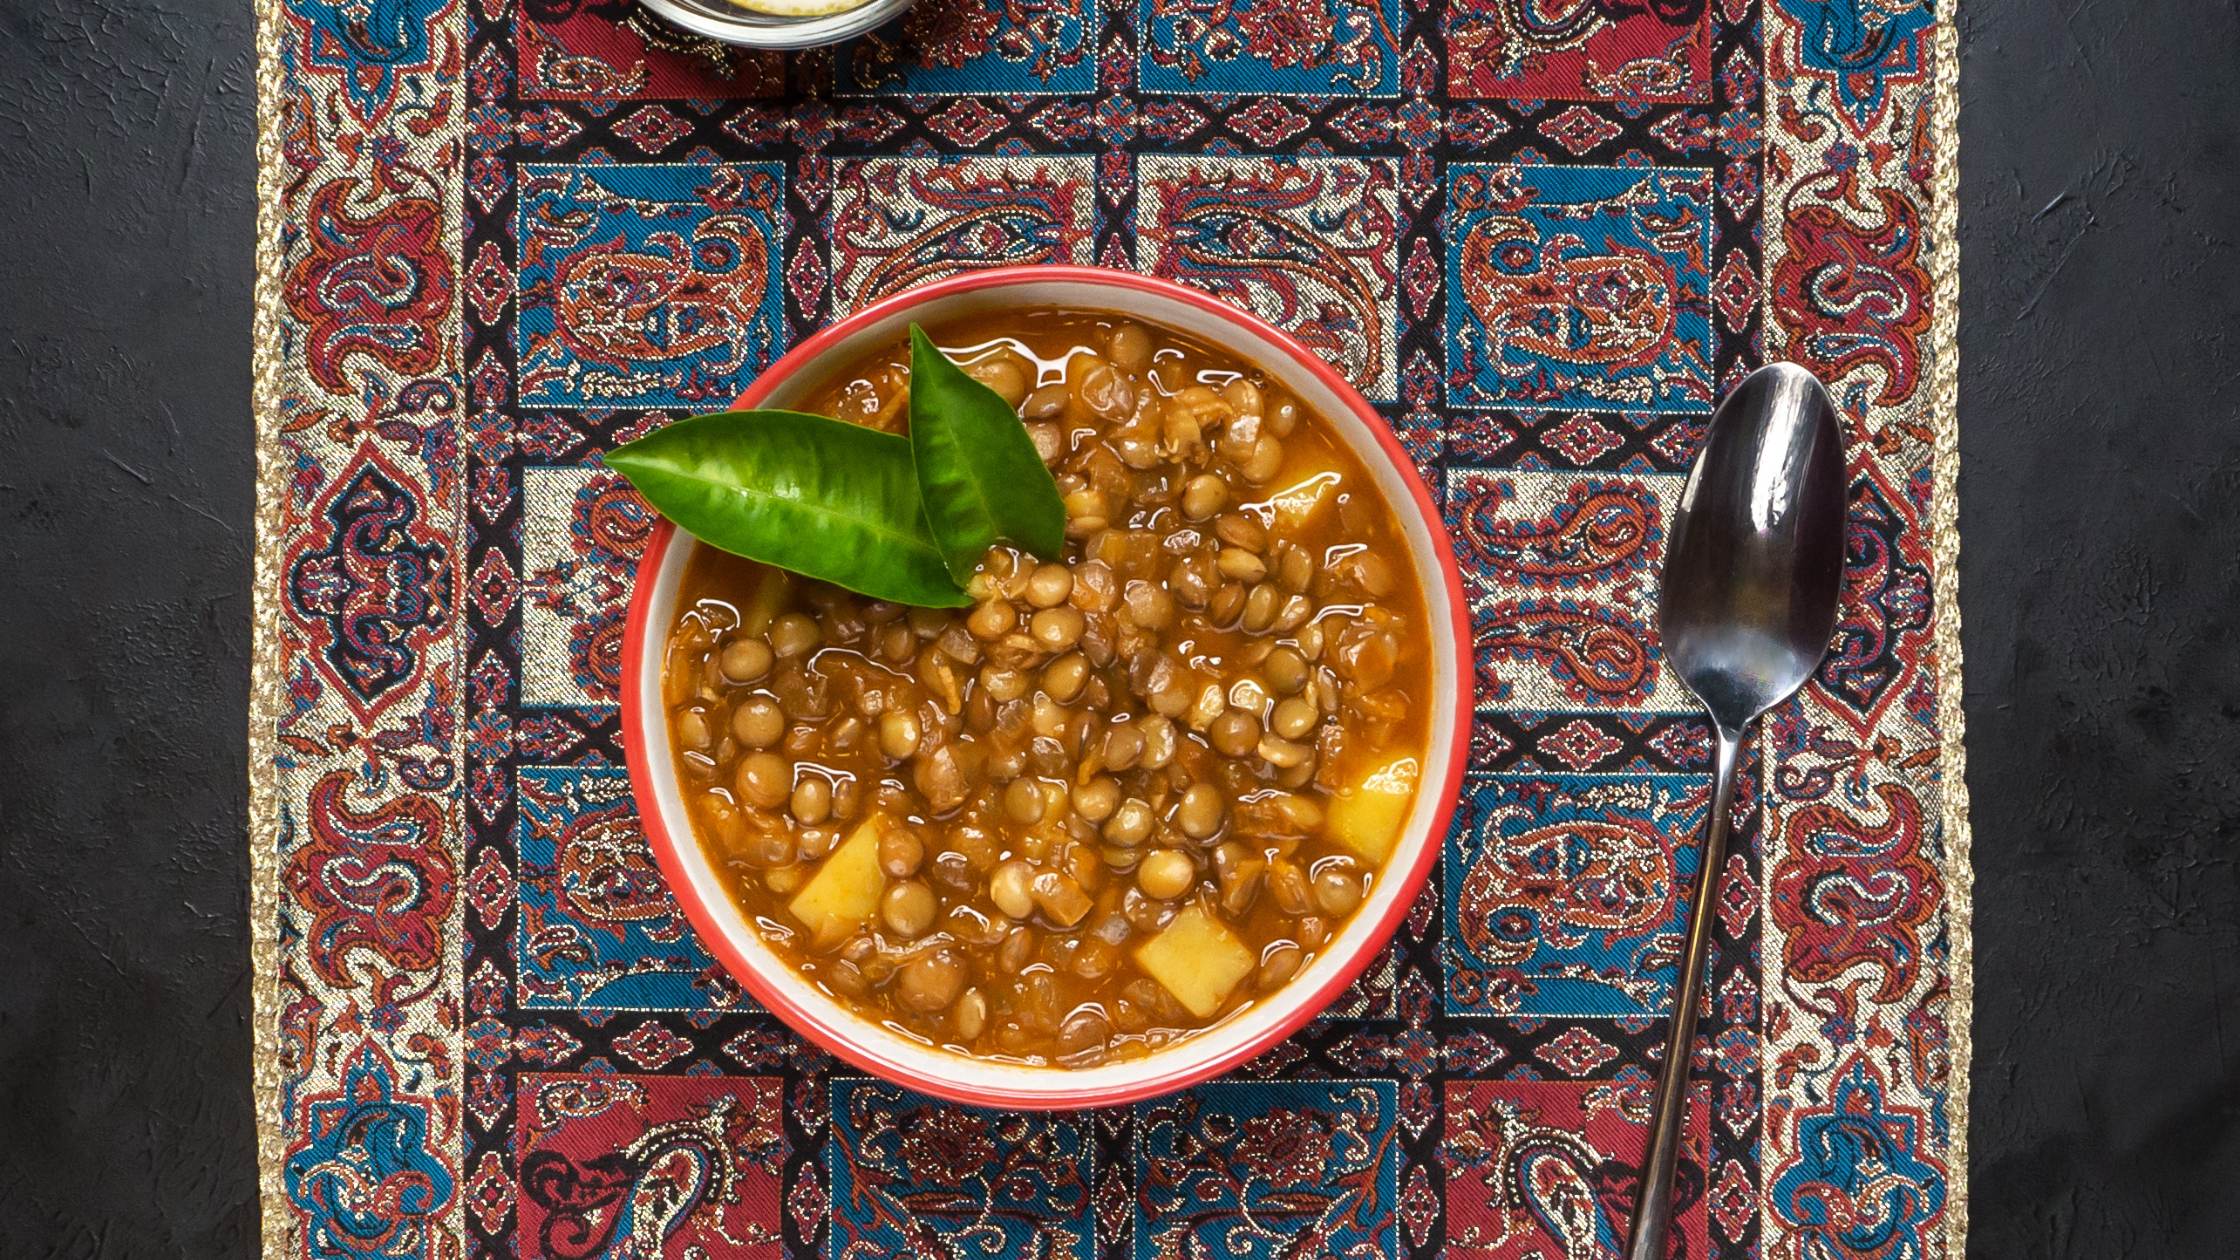 Geschichte und Kultur hinter persischen Lebensmitteln